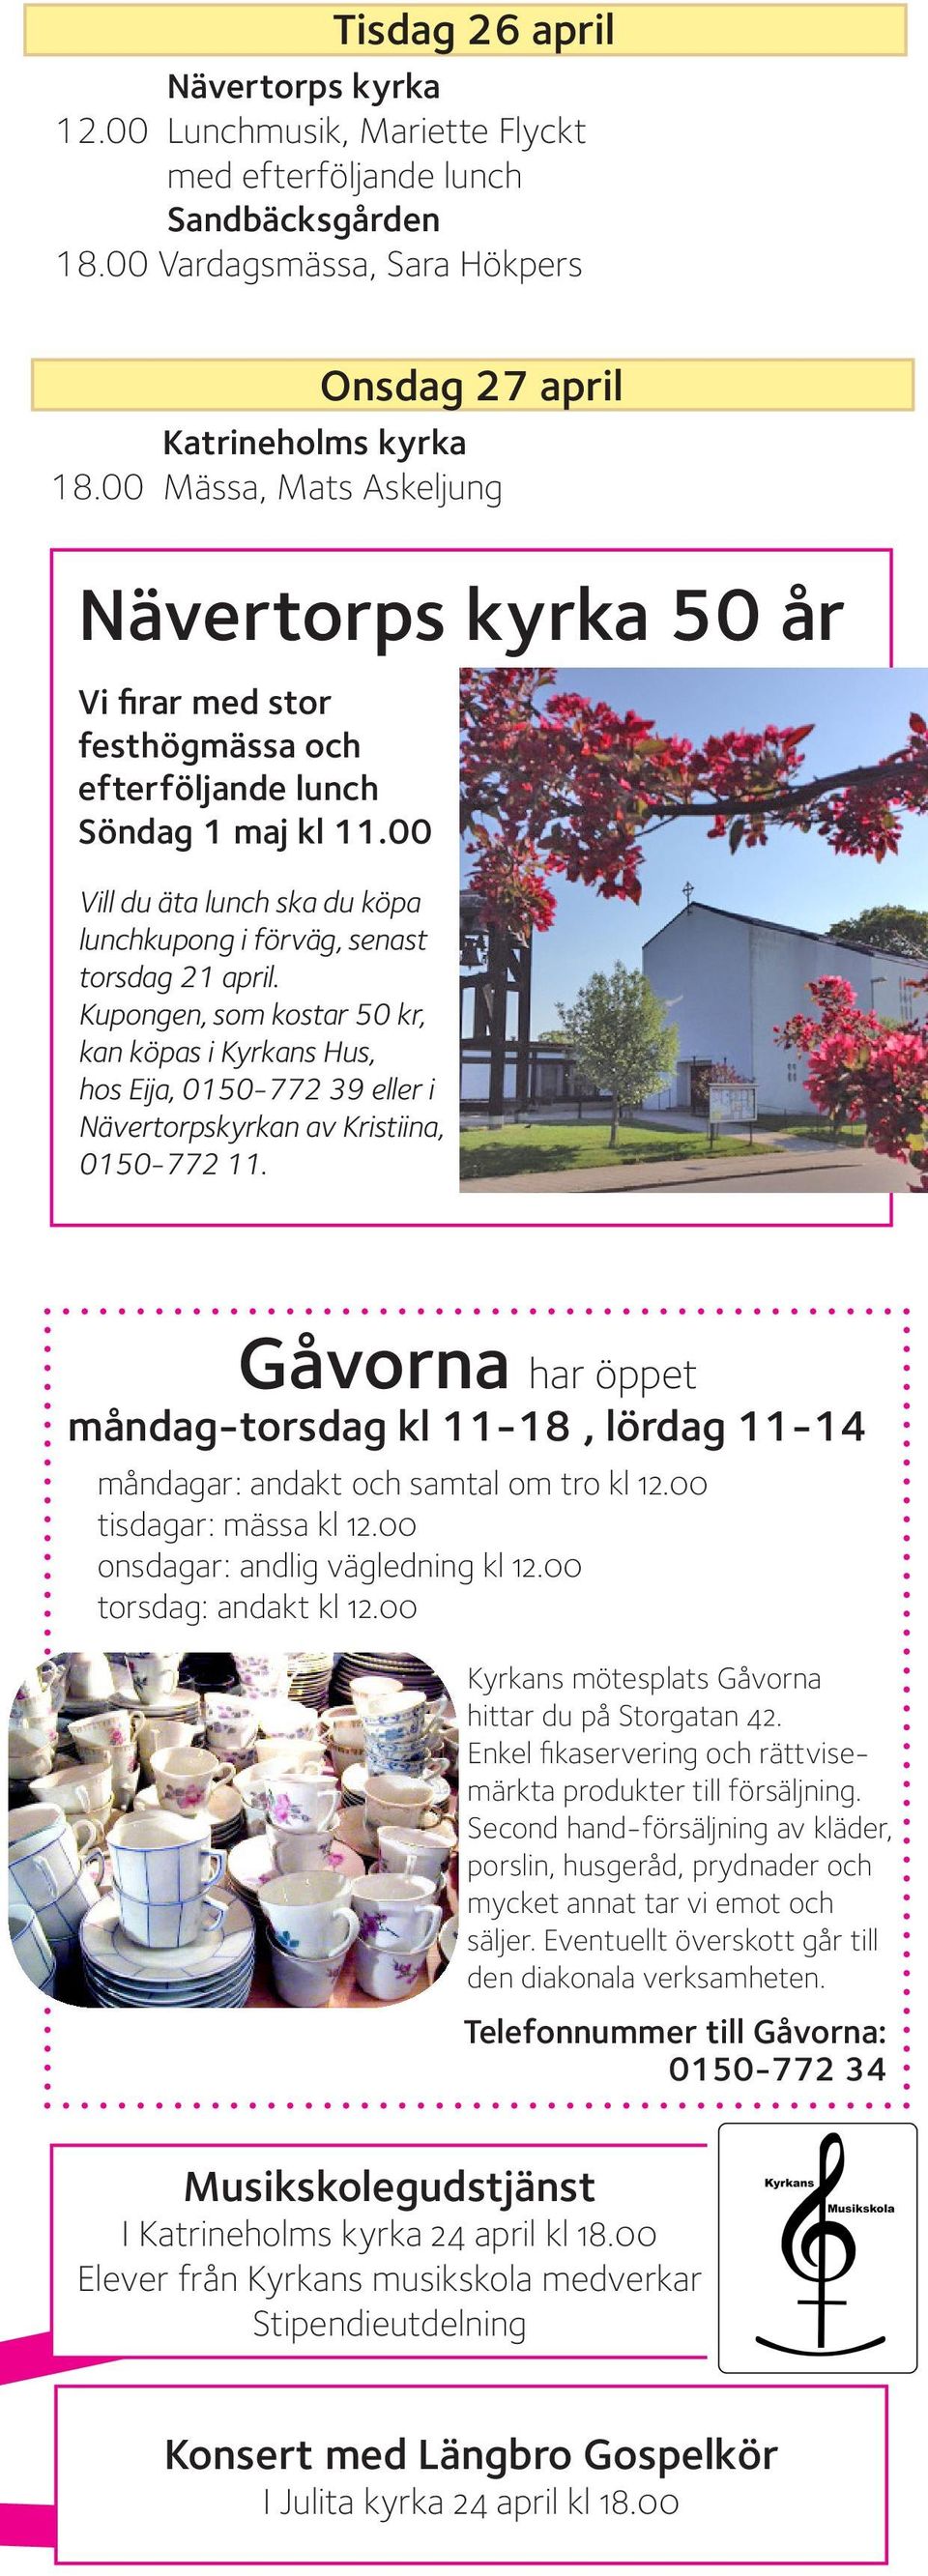 Kupongen, som kostar 50 kr, kan köpas i Kyrkans Hus, hos Eija, 0150-772 39 eller i Nävertorpskyrkan av Kristiina, 0150-772 11.